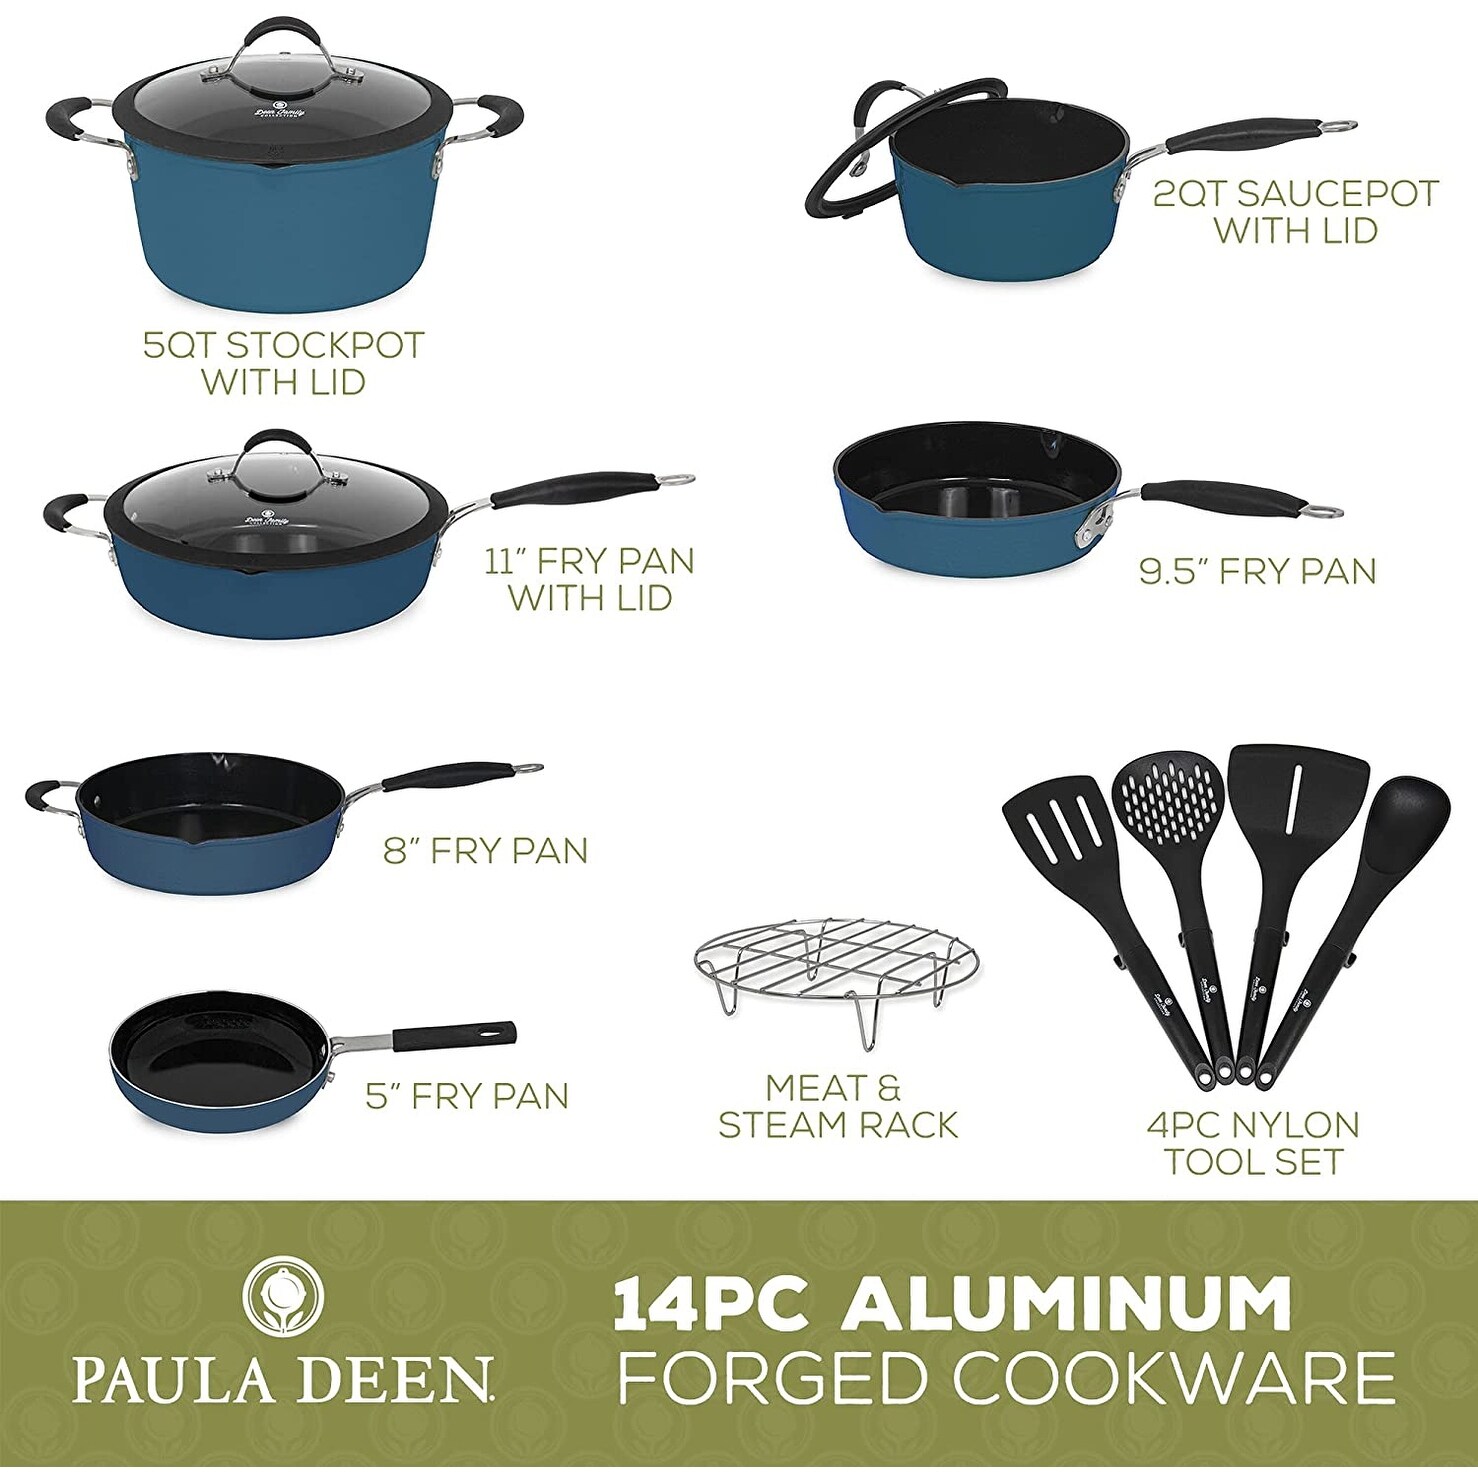 Paula Deen Cookware Set Review